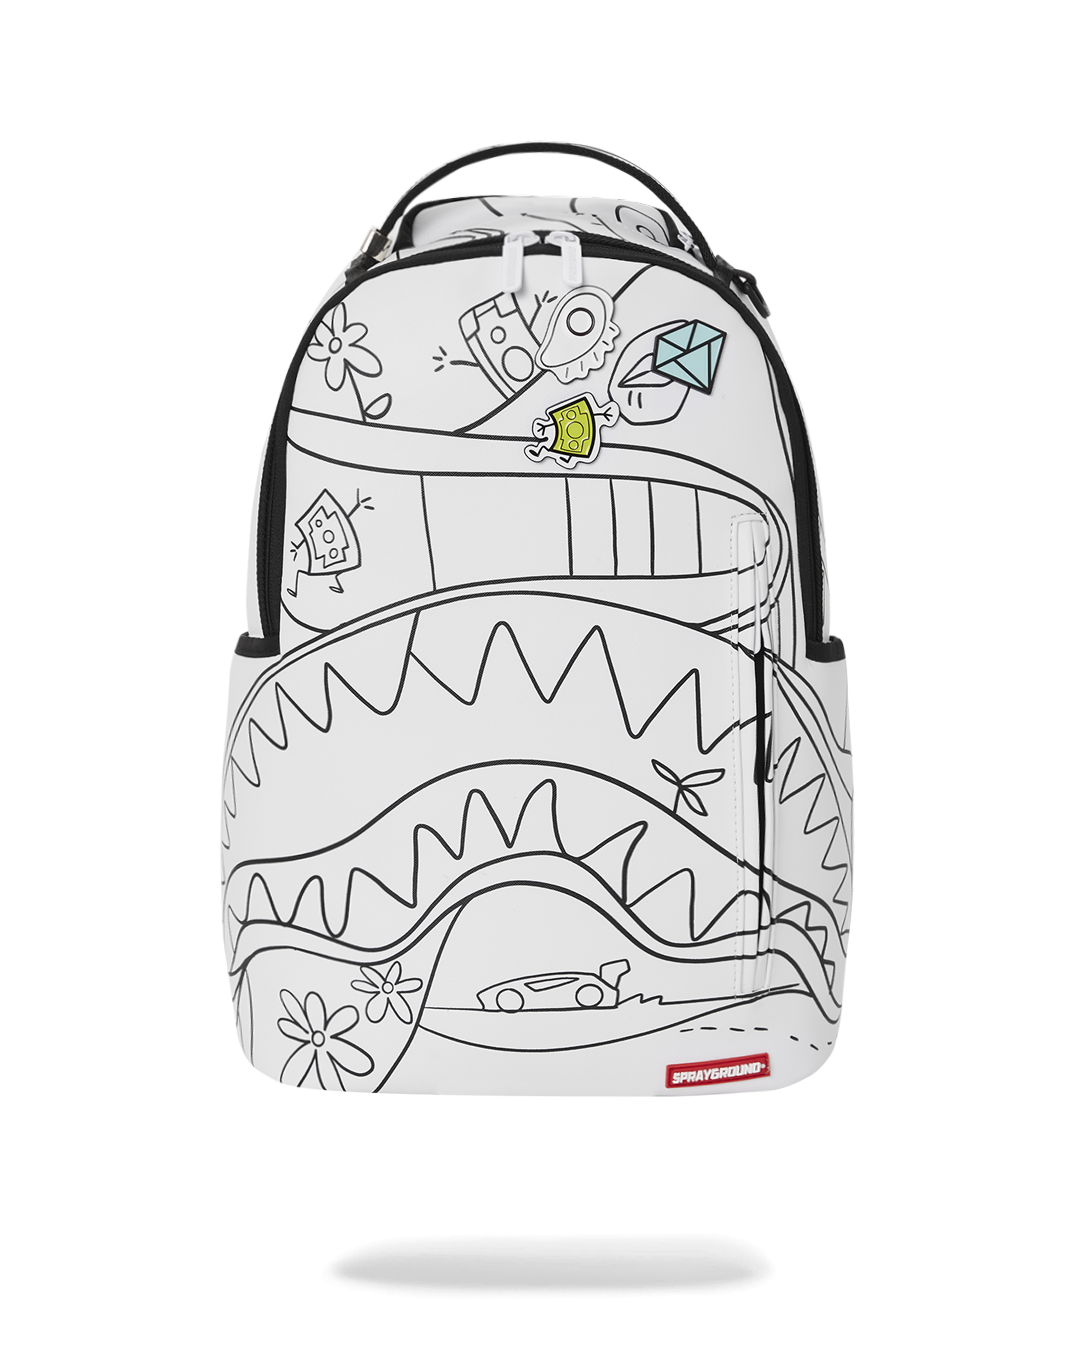 Sprayground Backpack Neon Shark Jungle